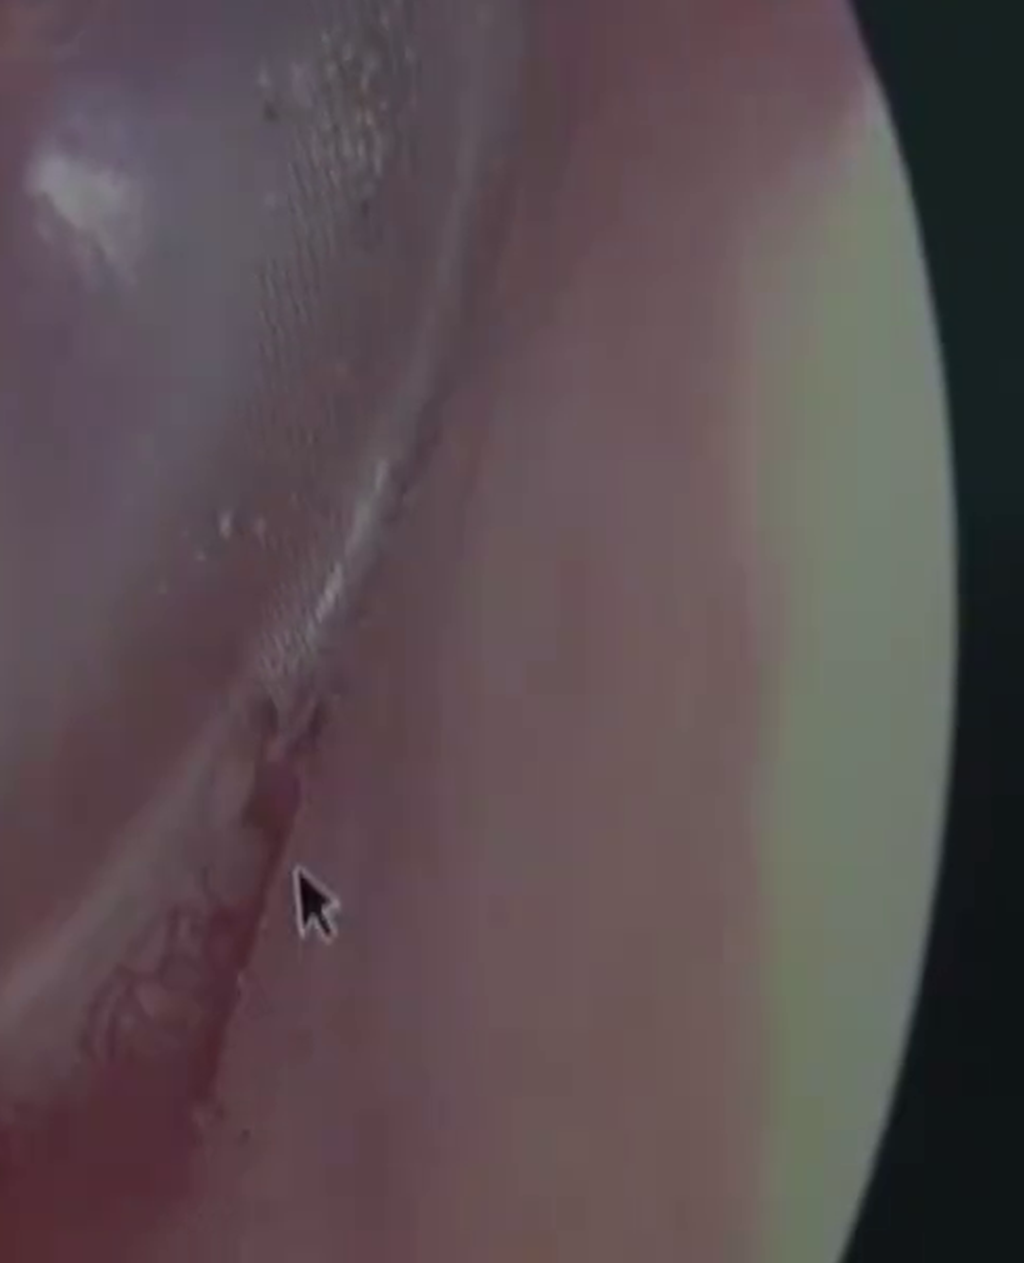 医生用耳镜发现有活虫在女病人耳中爬行。